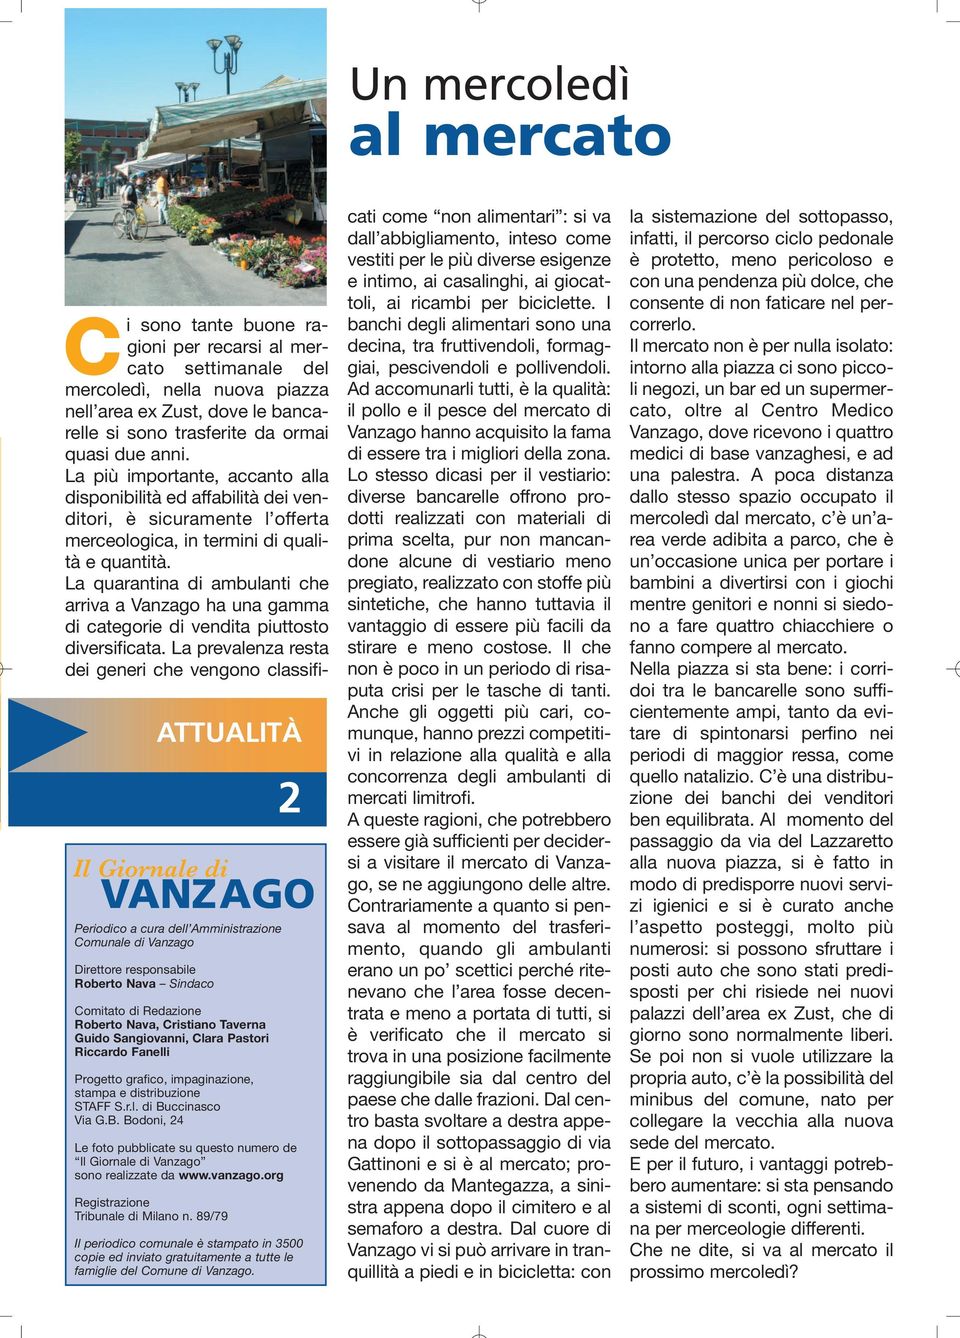 ccinasco Via G.B. Bodoni, 24 Le foto pubblicate su questo numero de Il Giornale di Vanzago sono realizzate da www.vanzago.org Registrazione Tribunale di Milano n.